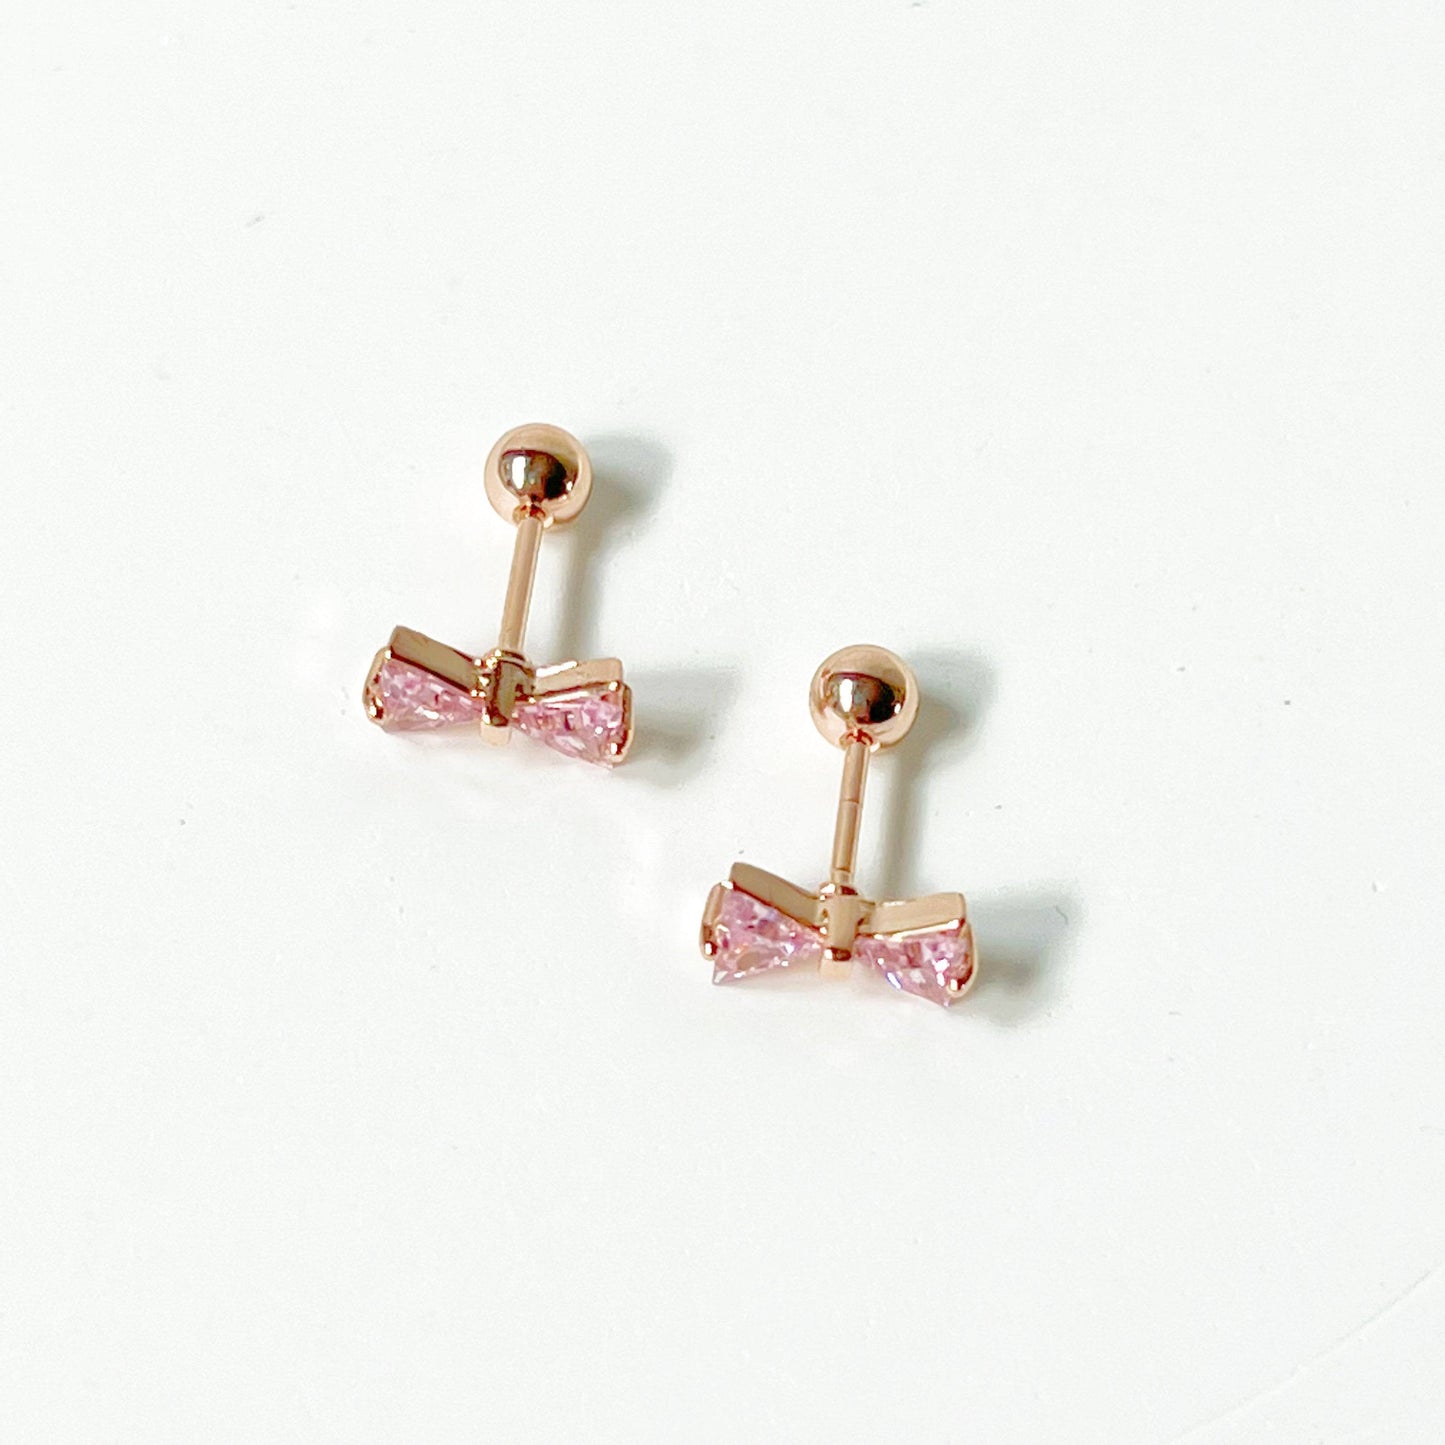 Rose Gold Bow Pink Zircon Earrings - Small Size Screw Back Earrings-Ninaouity